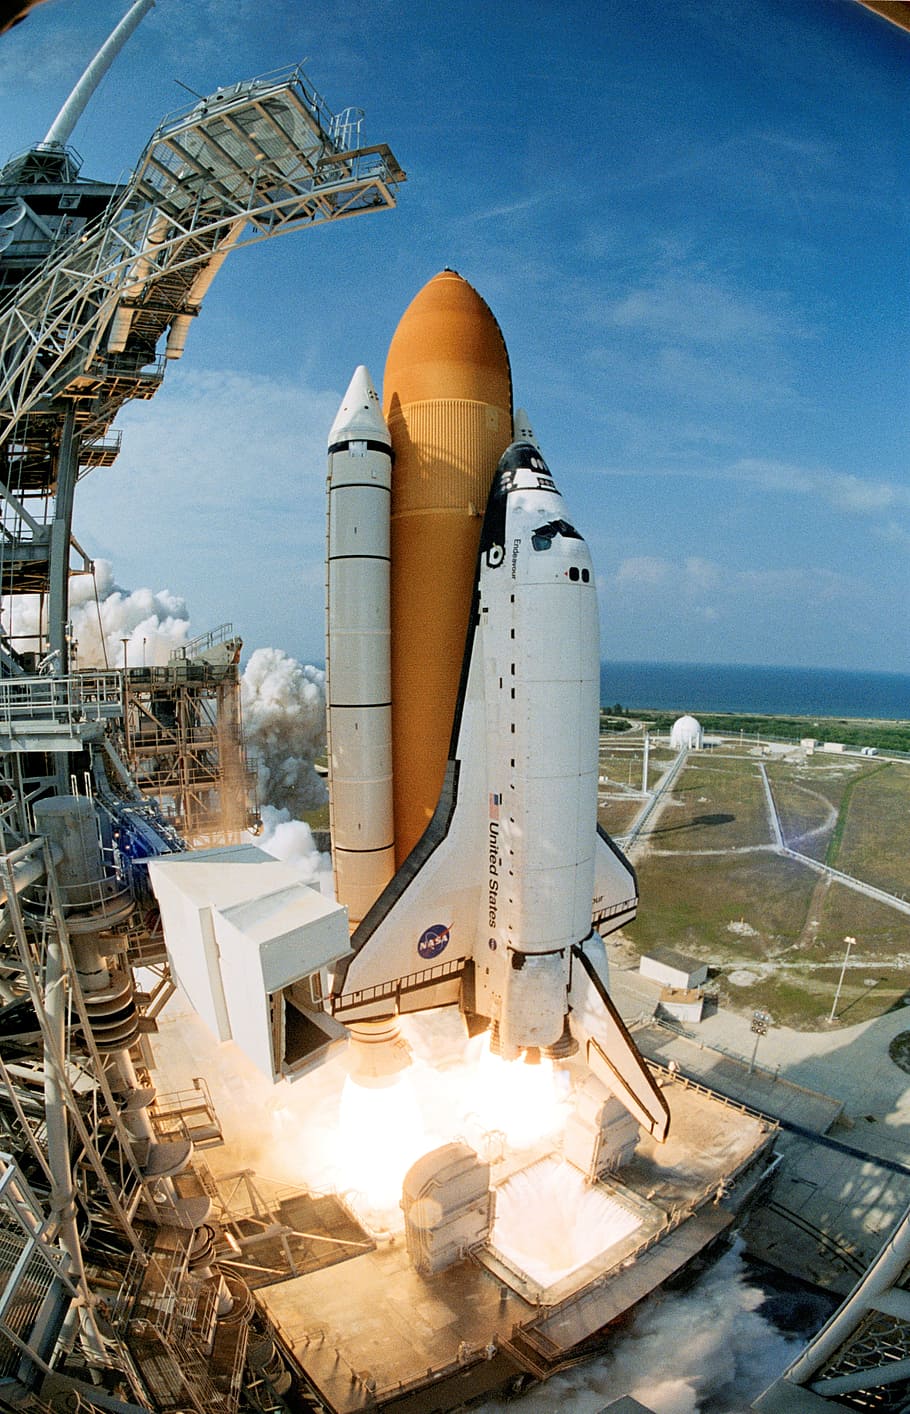 Ônibus espacial, lançamento, empreendimento, lançamento de ônibus espacial, kennedy space center, foguete, nave espacial, indústria, espaço, transporte de mercadorias